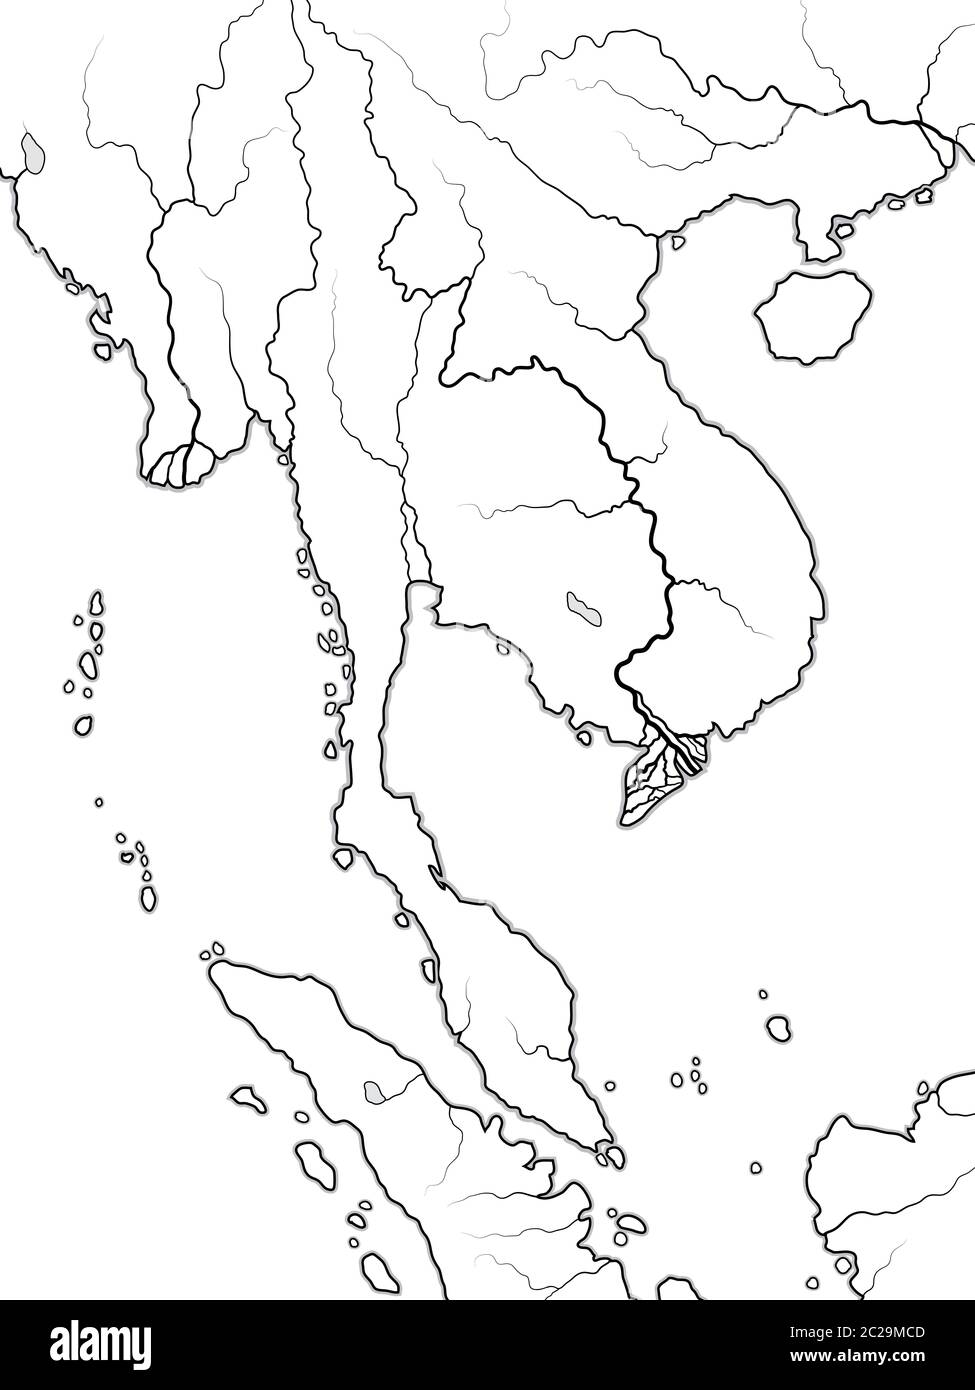 Mapa Mundial DE INDOCHINA: Península de Indochina, Tailandia, Vietnam, Laos, Malasia, Camboya. Gráfico geográfico. Foto de stock